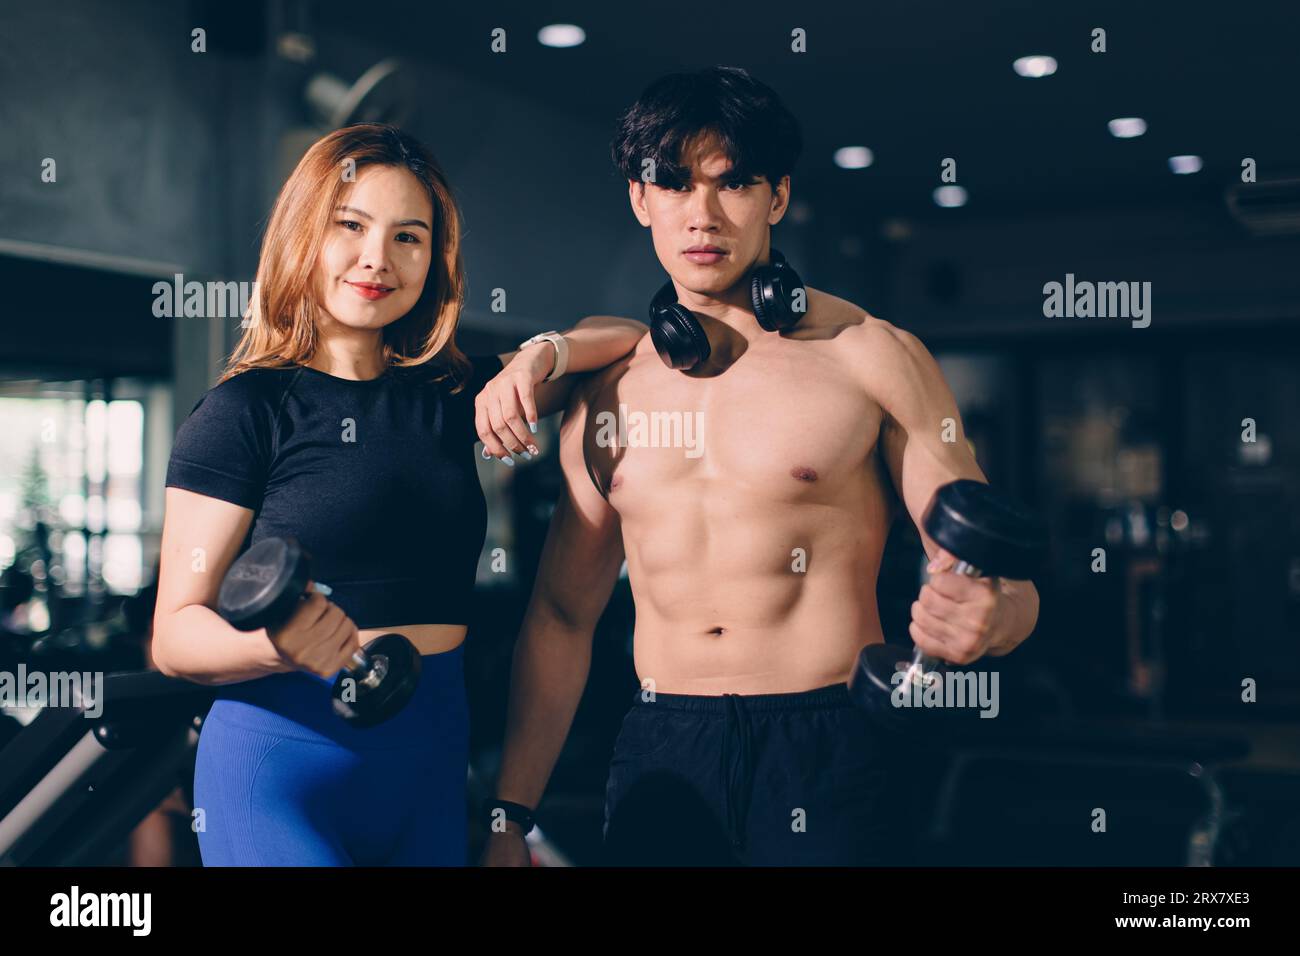 Ritratto Happy sport uomo e donna bodybuilding pubblicità atleta modello allenamento muscolare in palestra fitness sport club Foto Stock